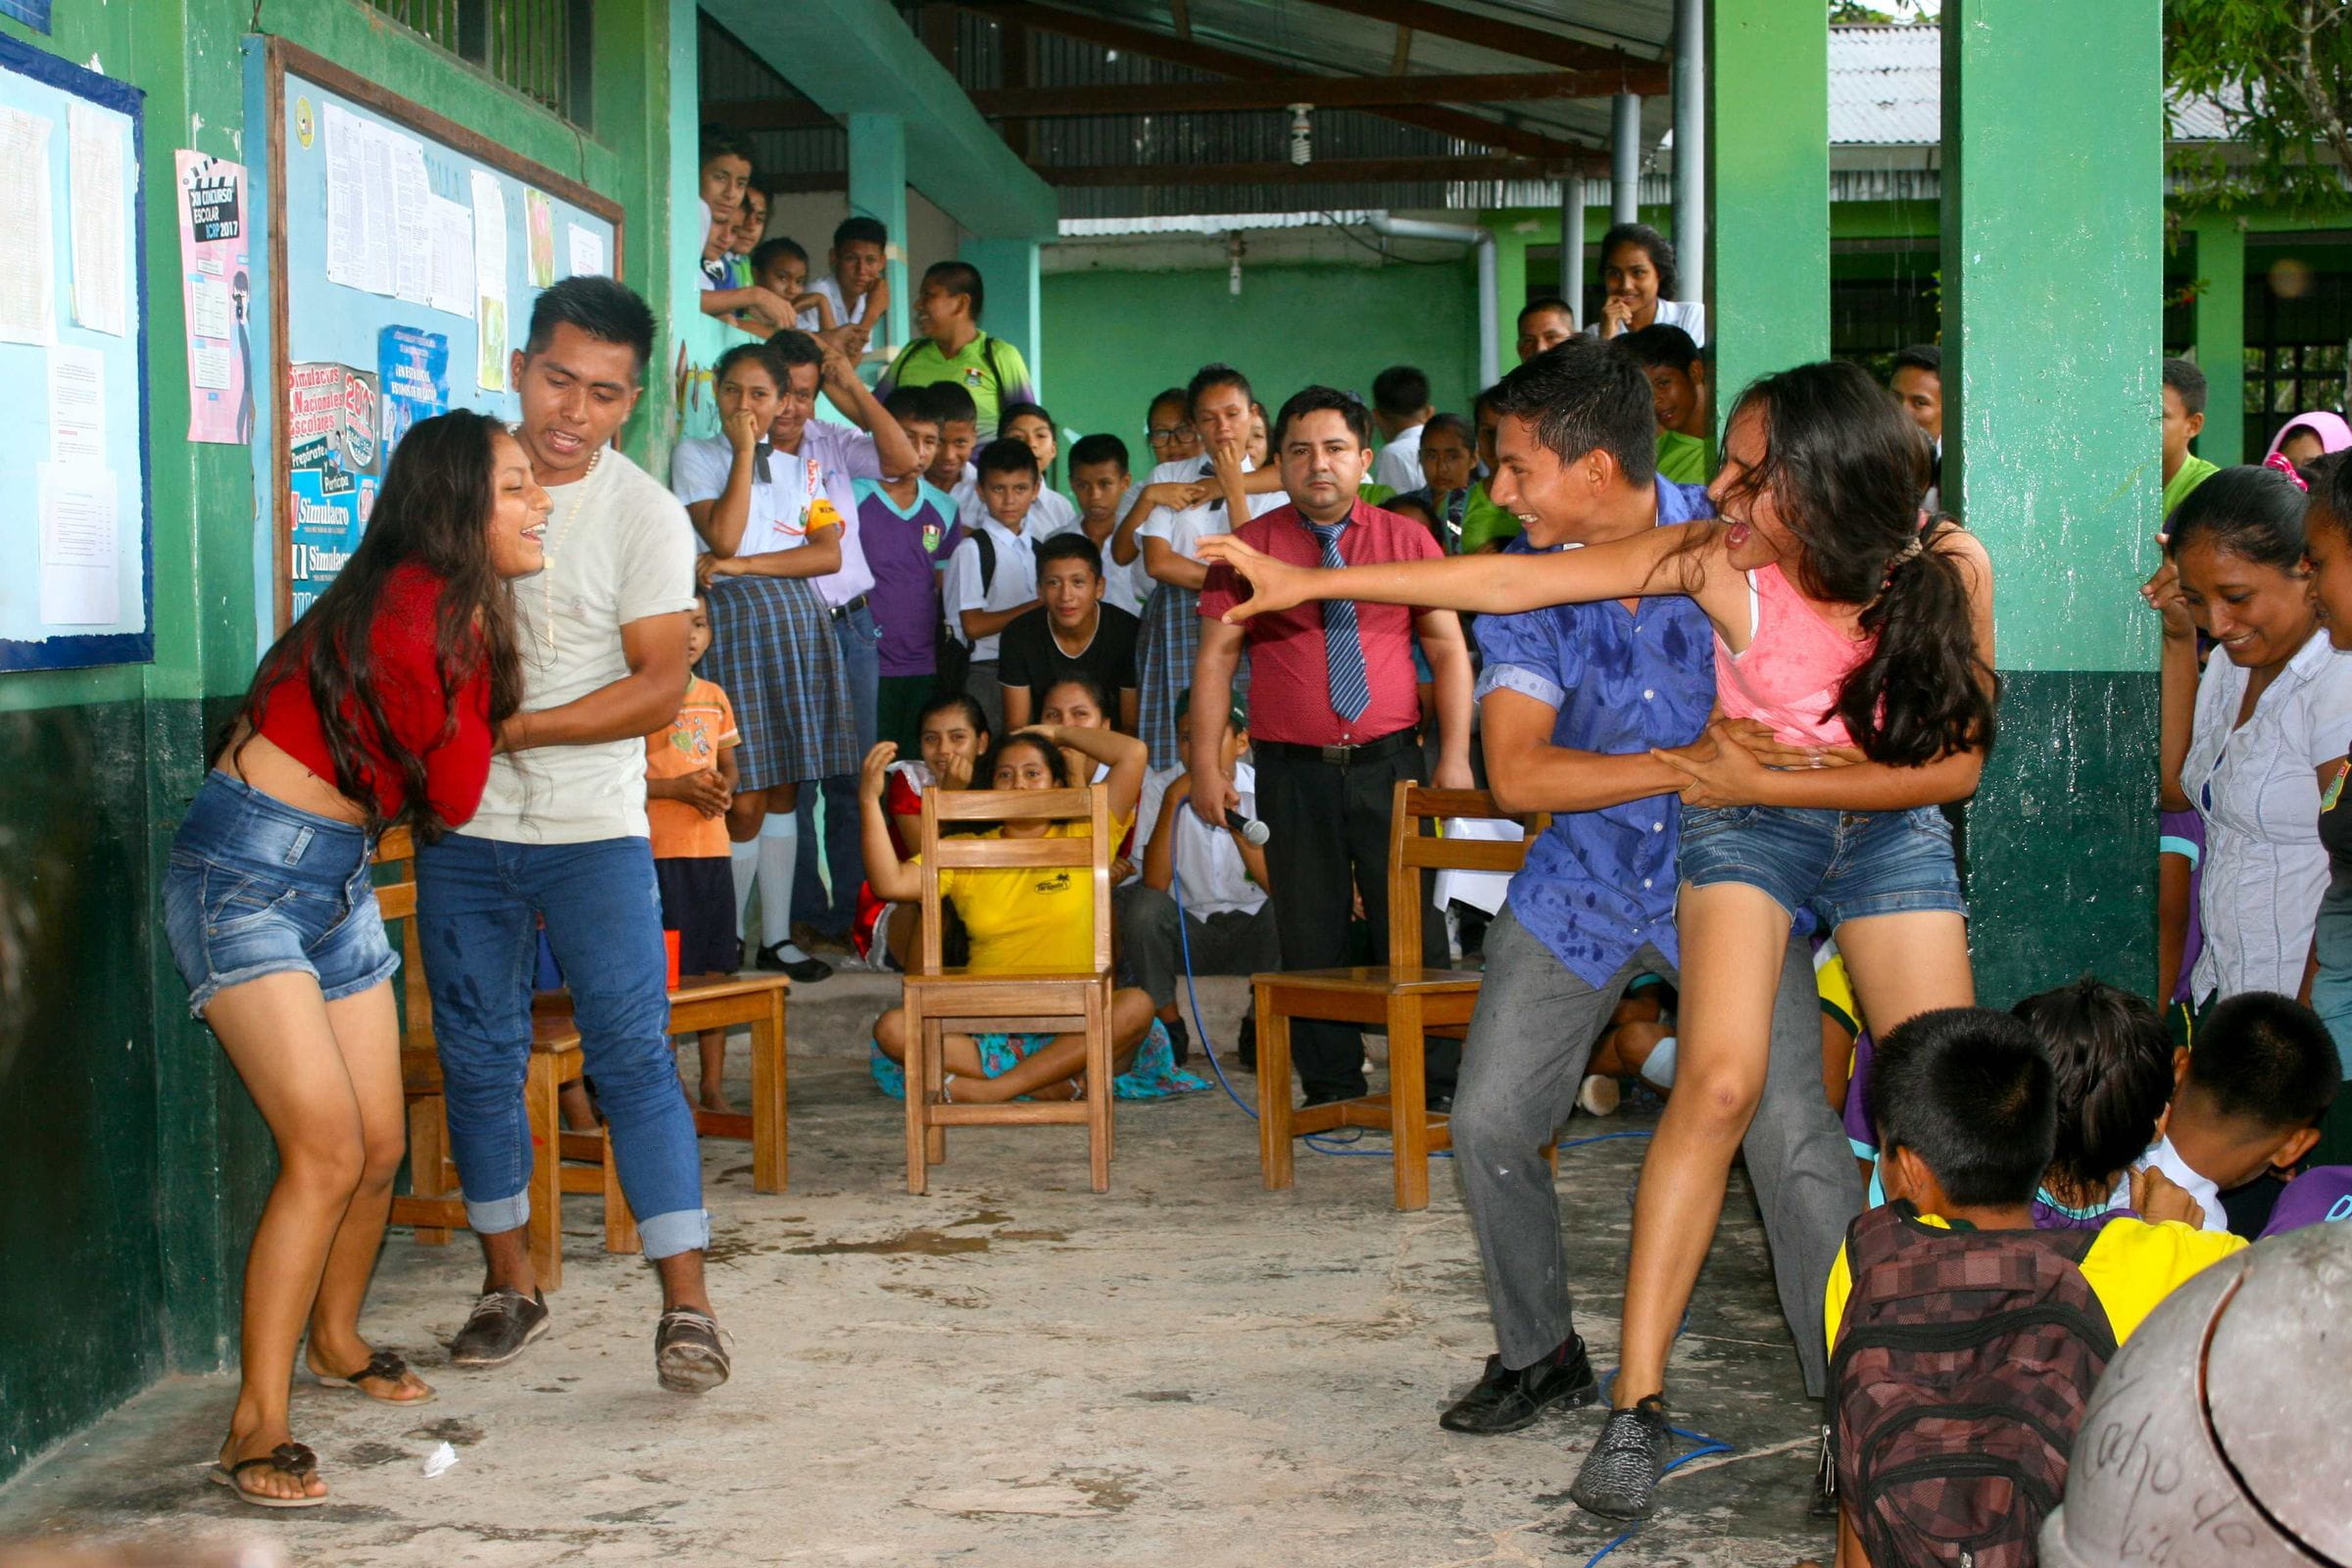 Theaterspiel in einer Schulklasse zum Thema Kinderhandel in Peru.  (Quelle: Jürgen Schübelin)